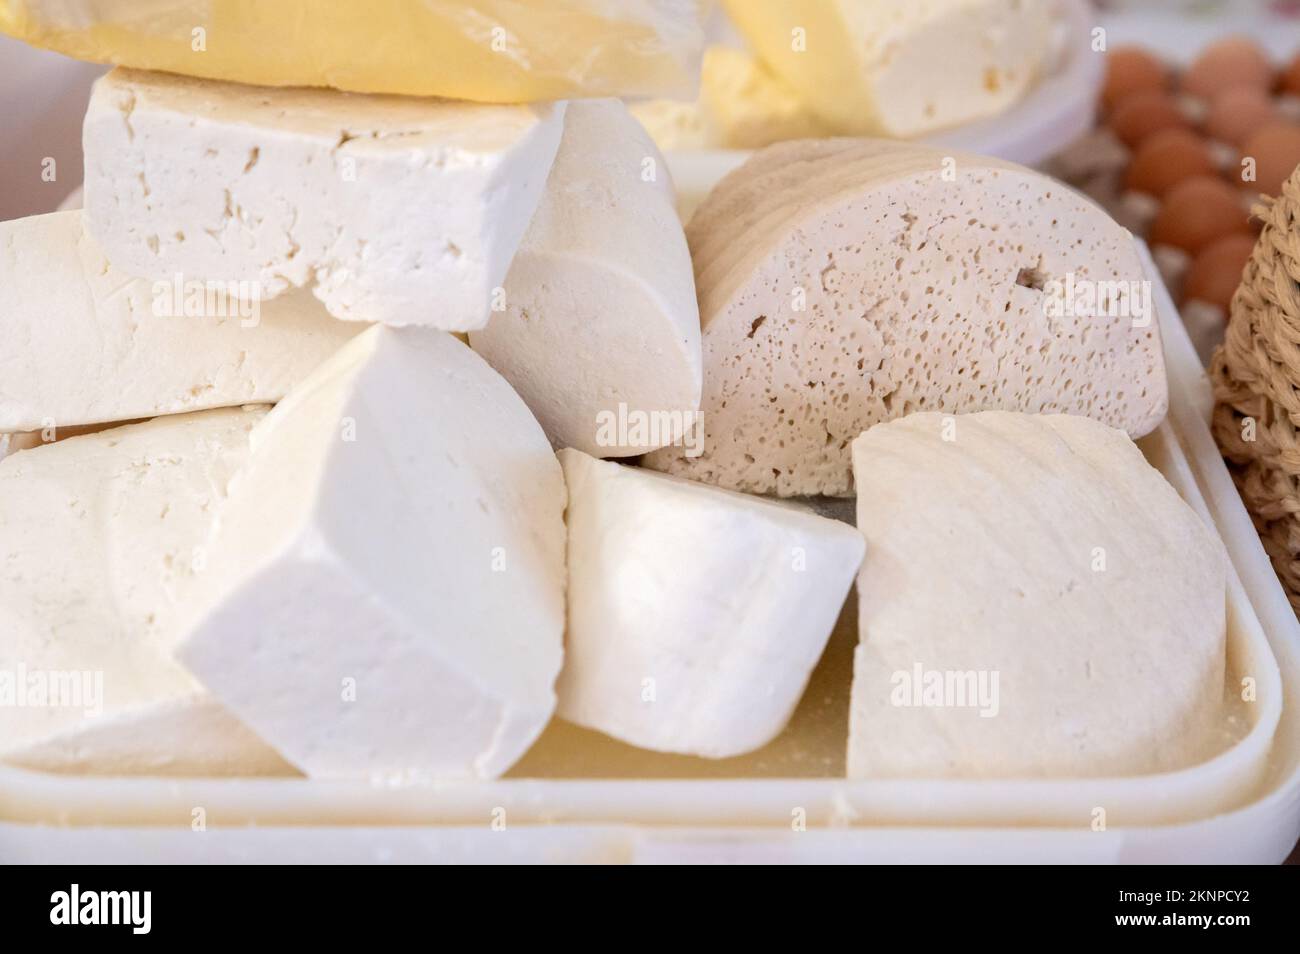 Vue rapprochée des délicieux fromages de type caucasien ou balkanique faits maison sur le marché Banque D'Images